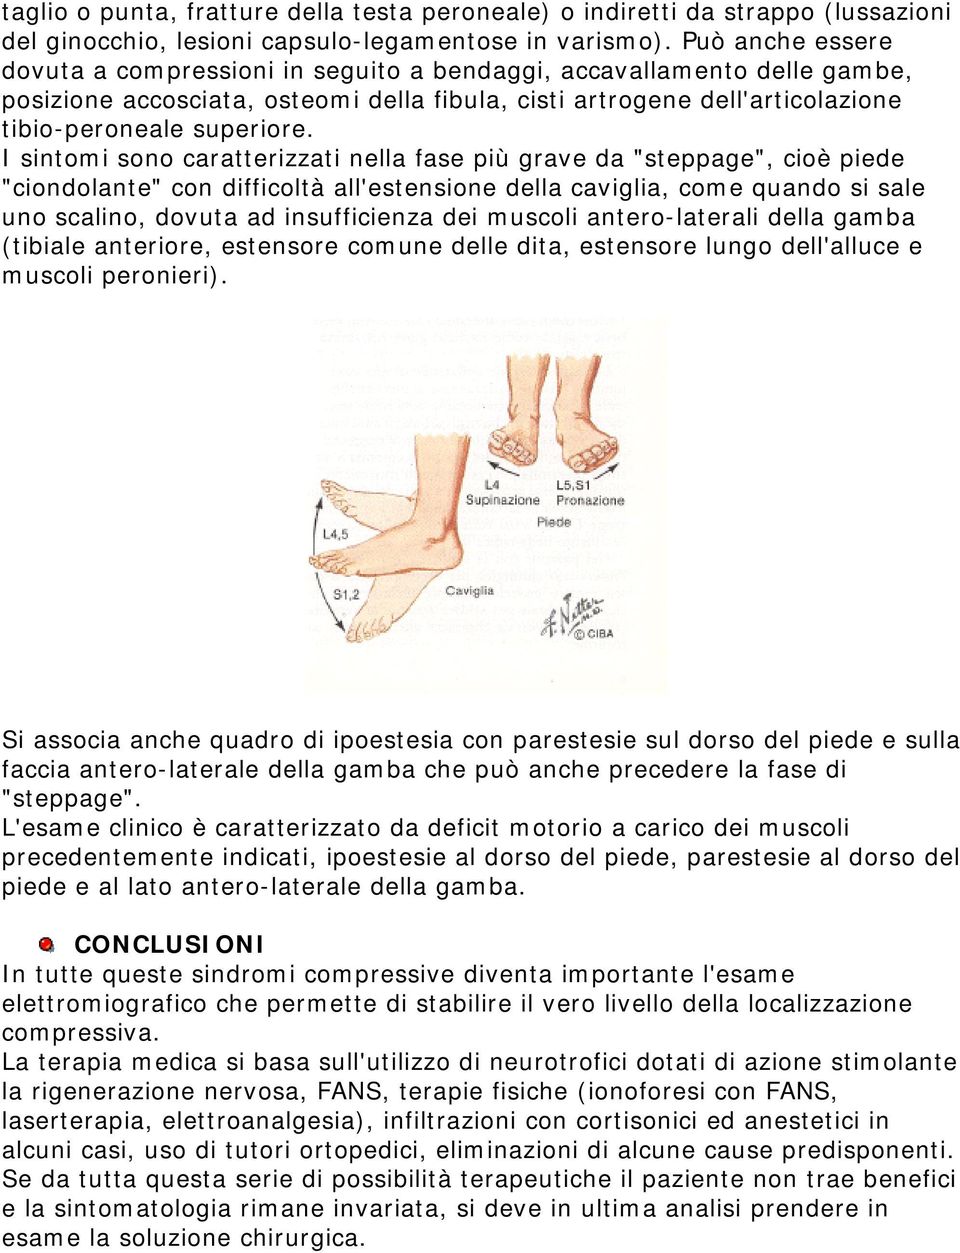 I sintomi sono caratterizzati nella fase più grave da "steppage", cioè piede "ciondolante" con difficoltà all'estensione della caviglia, come quando si sale uno scalino, dovuta ad insufficienza dei